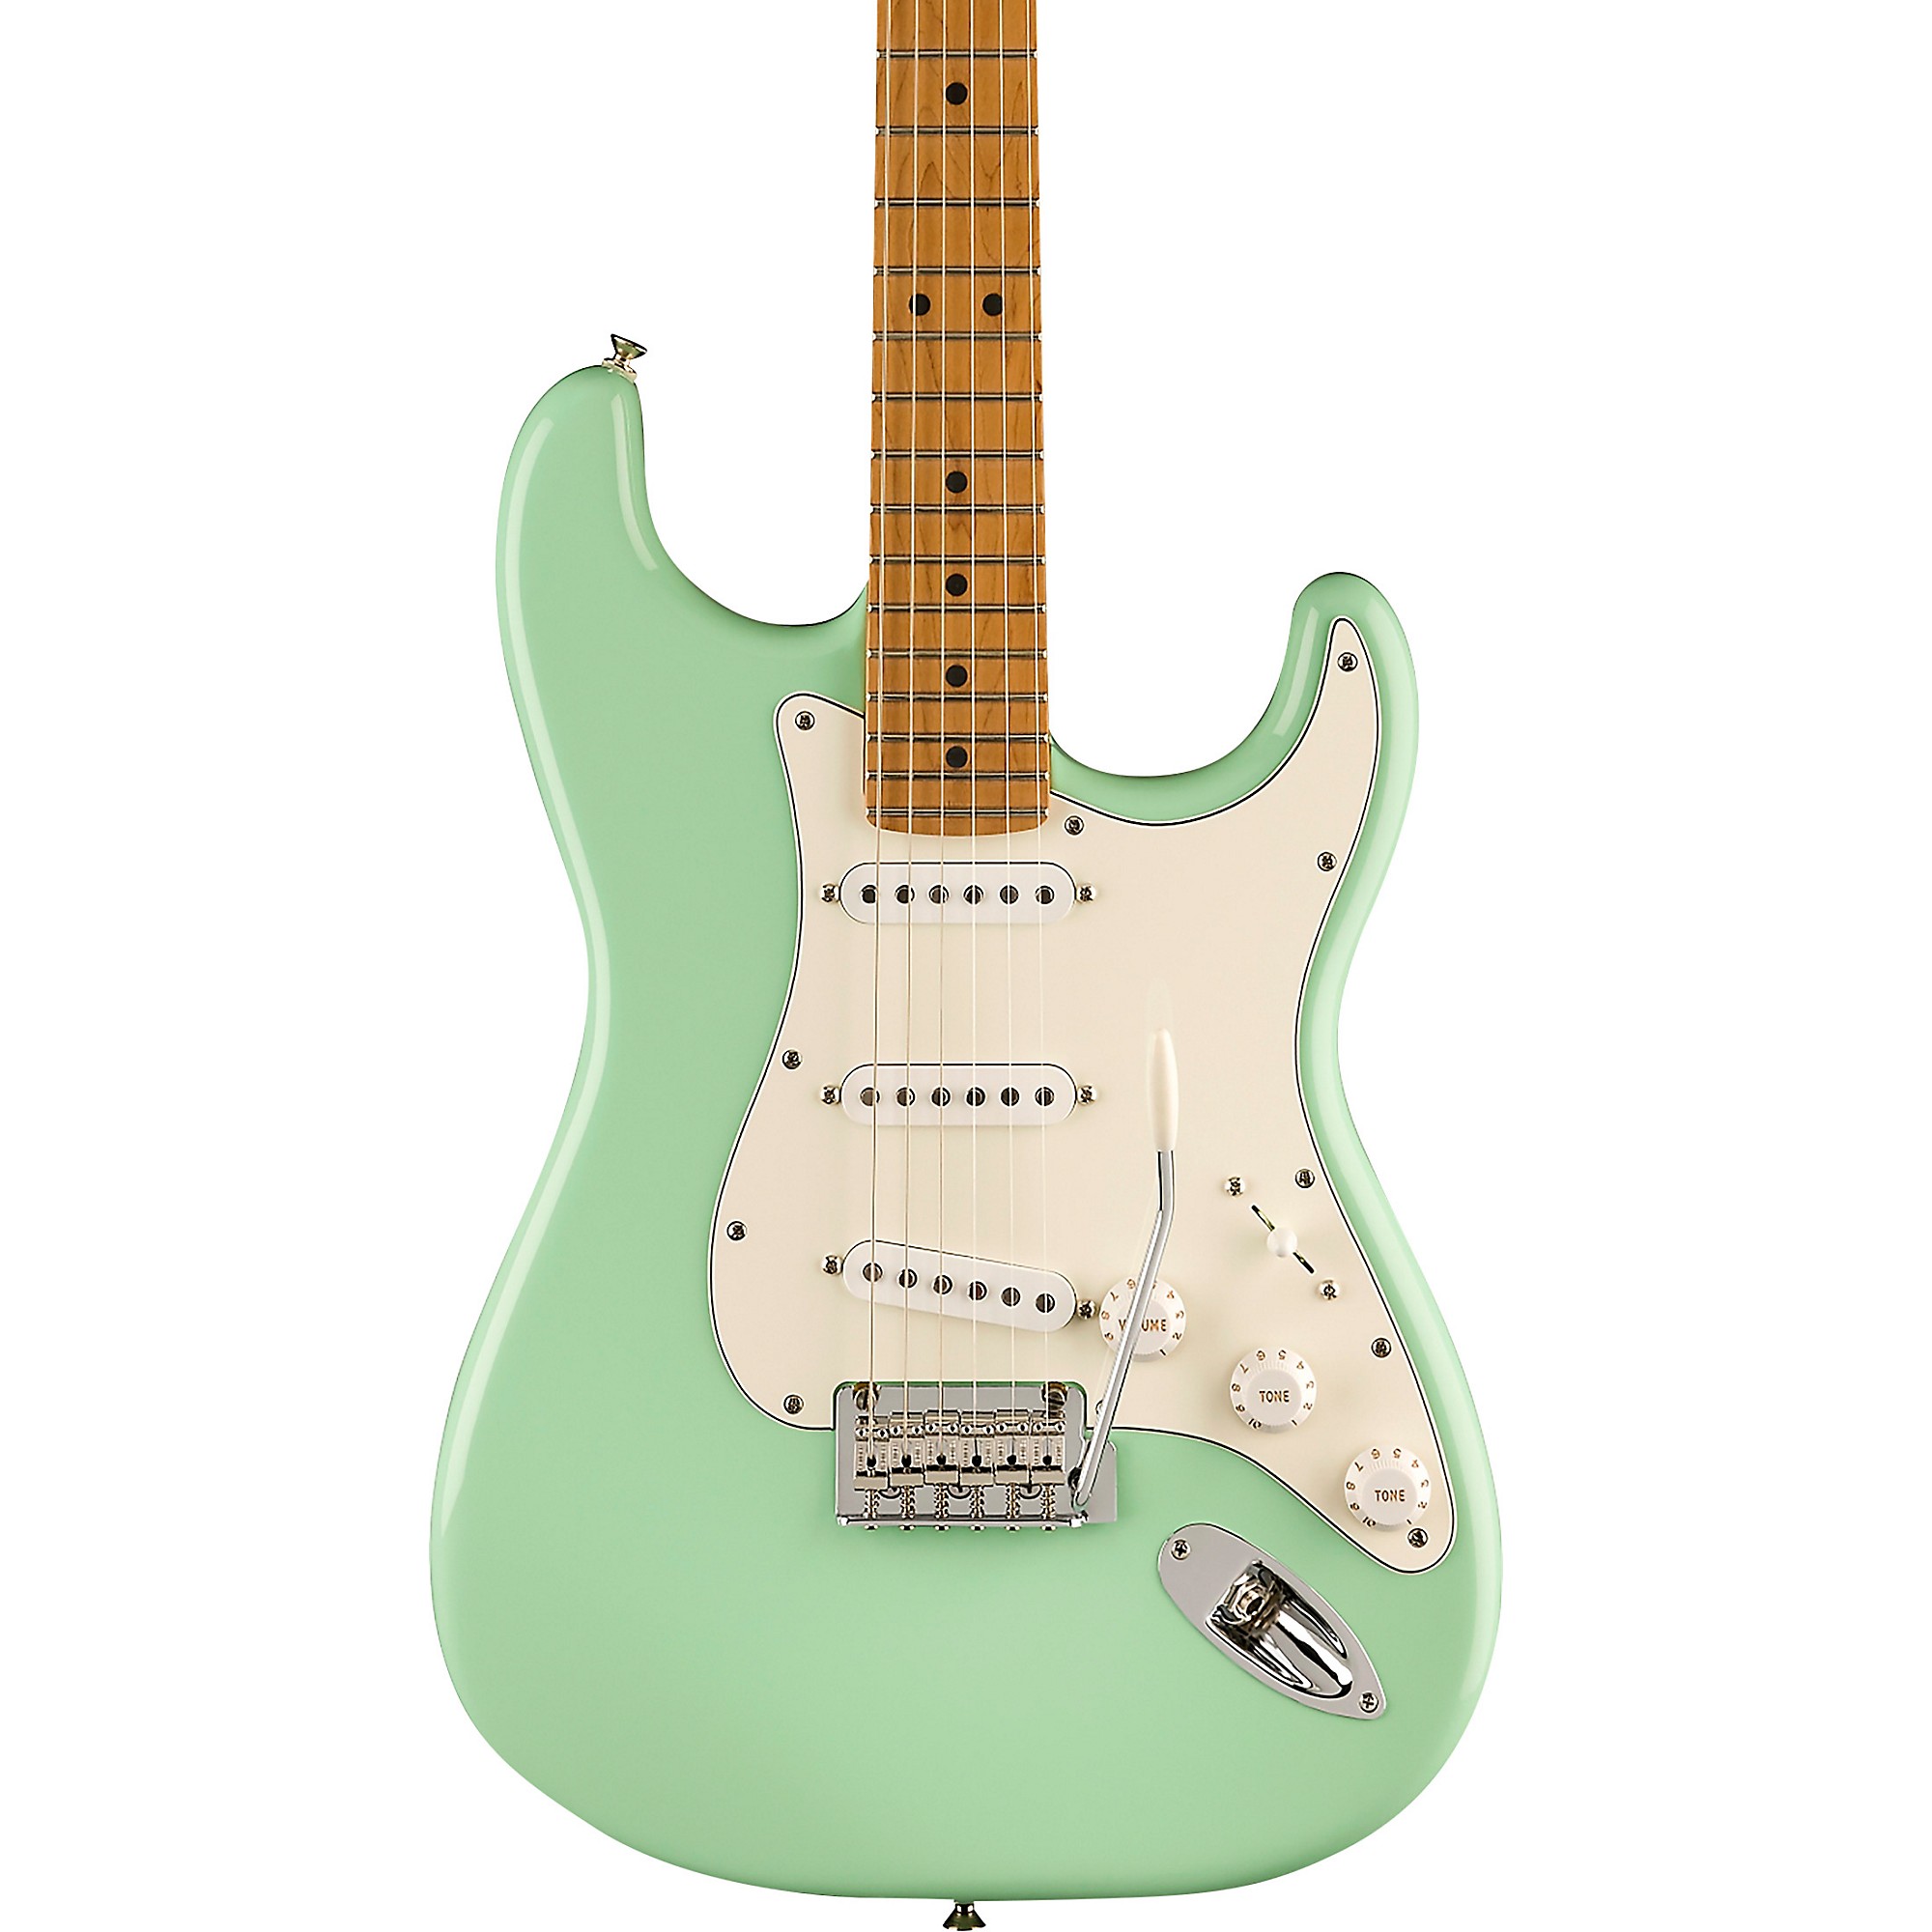 Fender Player Stratocaster Накладка на гриф из жареного клена со звукоснимателями Fat 50-х годов. Электрогитара ограниченного выпуска Surf Green